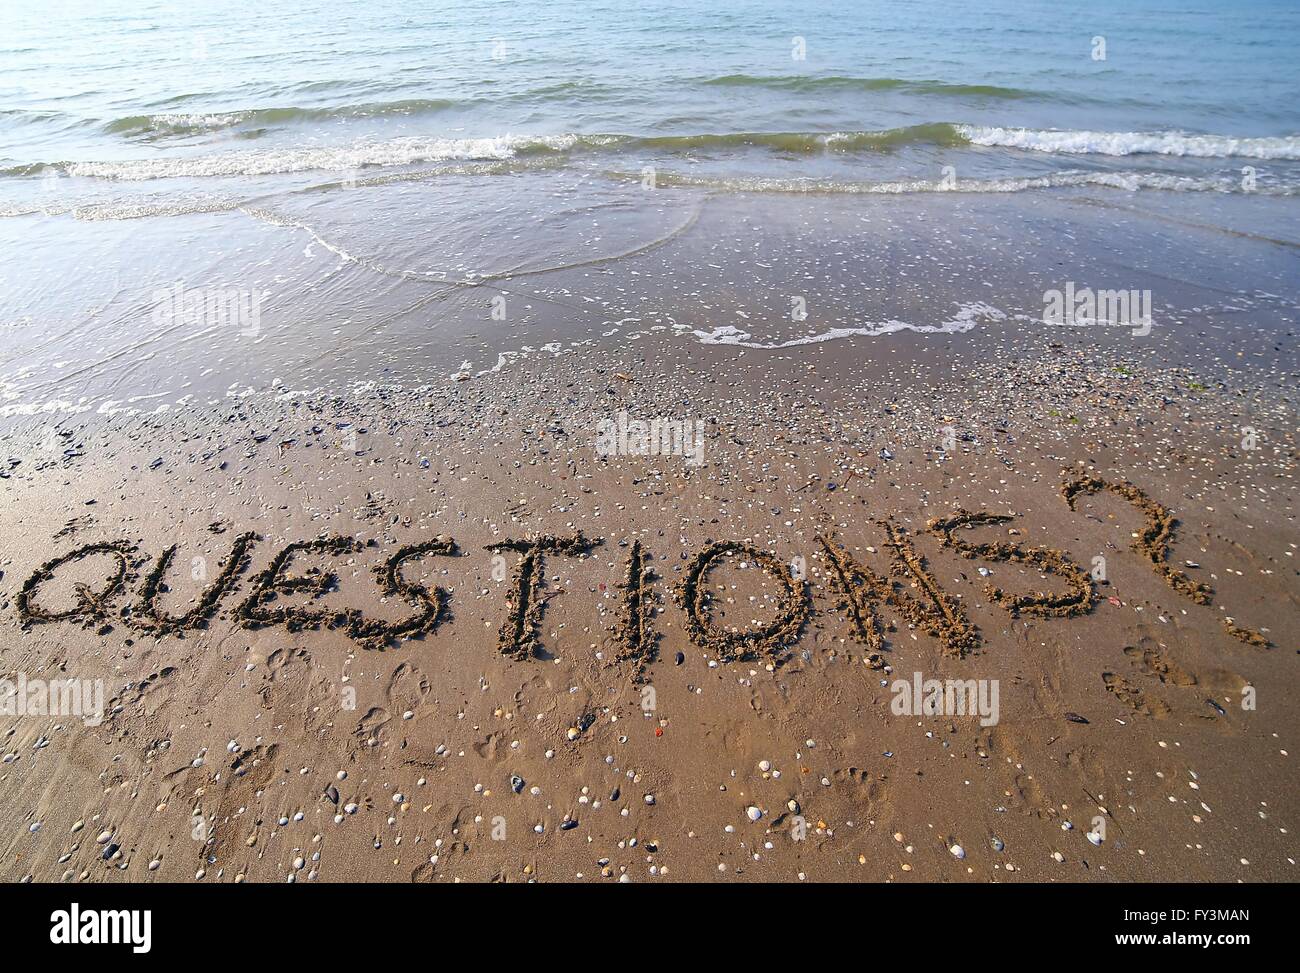 Wort-Fragen geschrieben in großen Lettern auf dem Sand des Meeres im Sommer Stockfoto